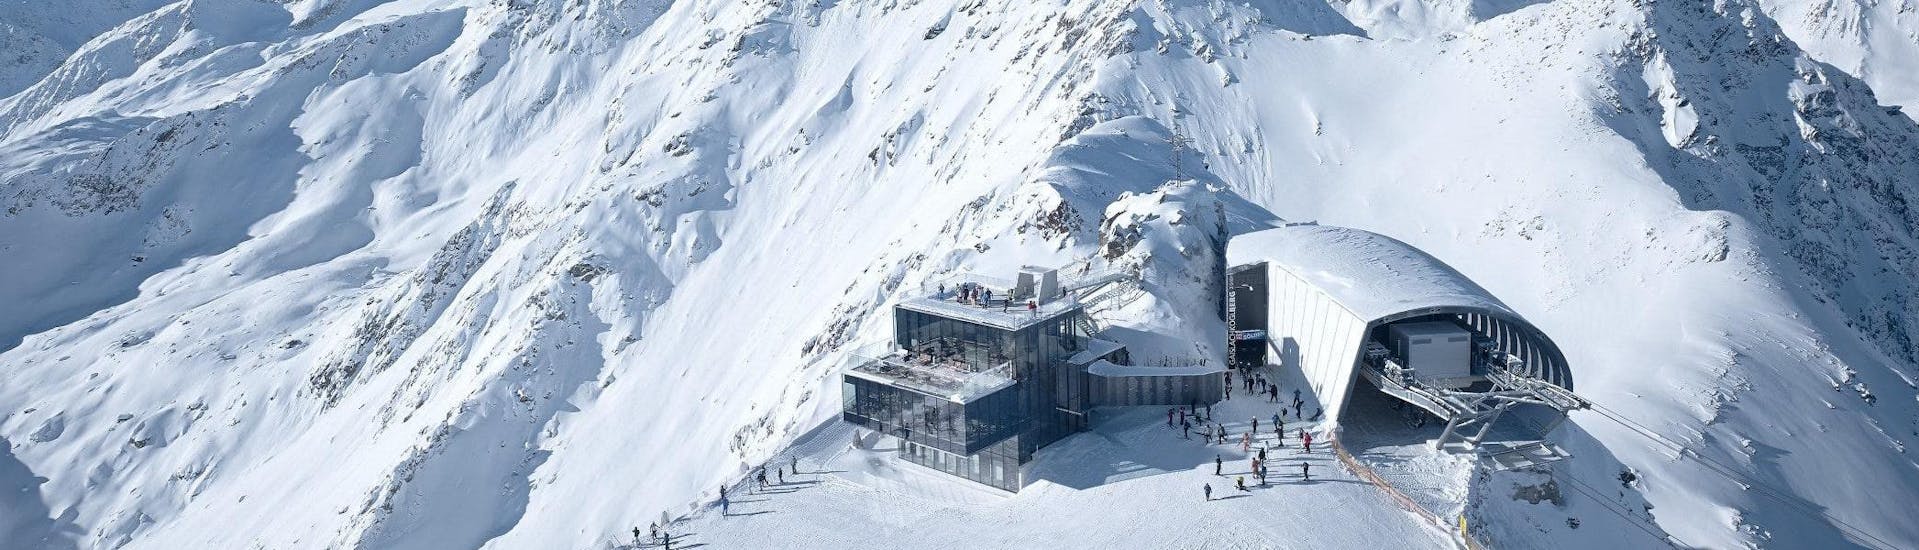 Blick aus der Vogelperspektive auf die Bergstation der Gaislachkoglbahn im Skigebiet Sölden, wo die örtlichen Skischulen eine Bandbreite an Skikursen anbieten.